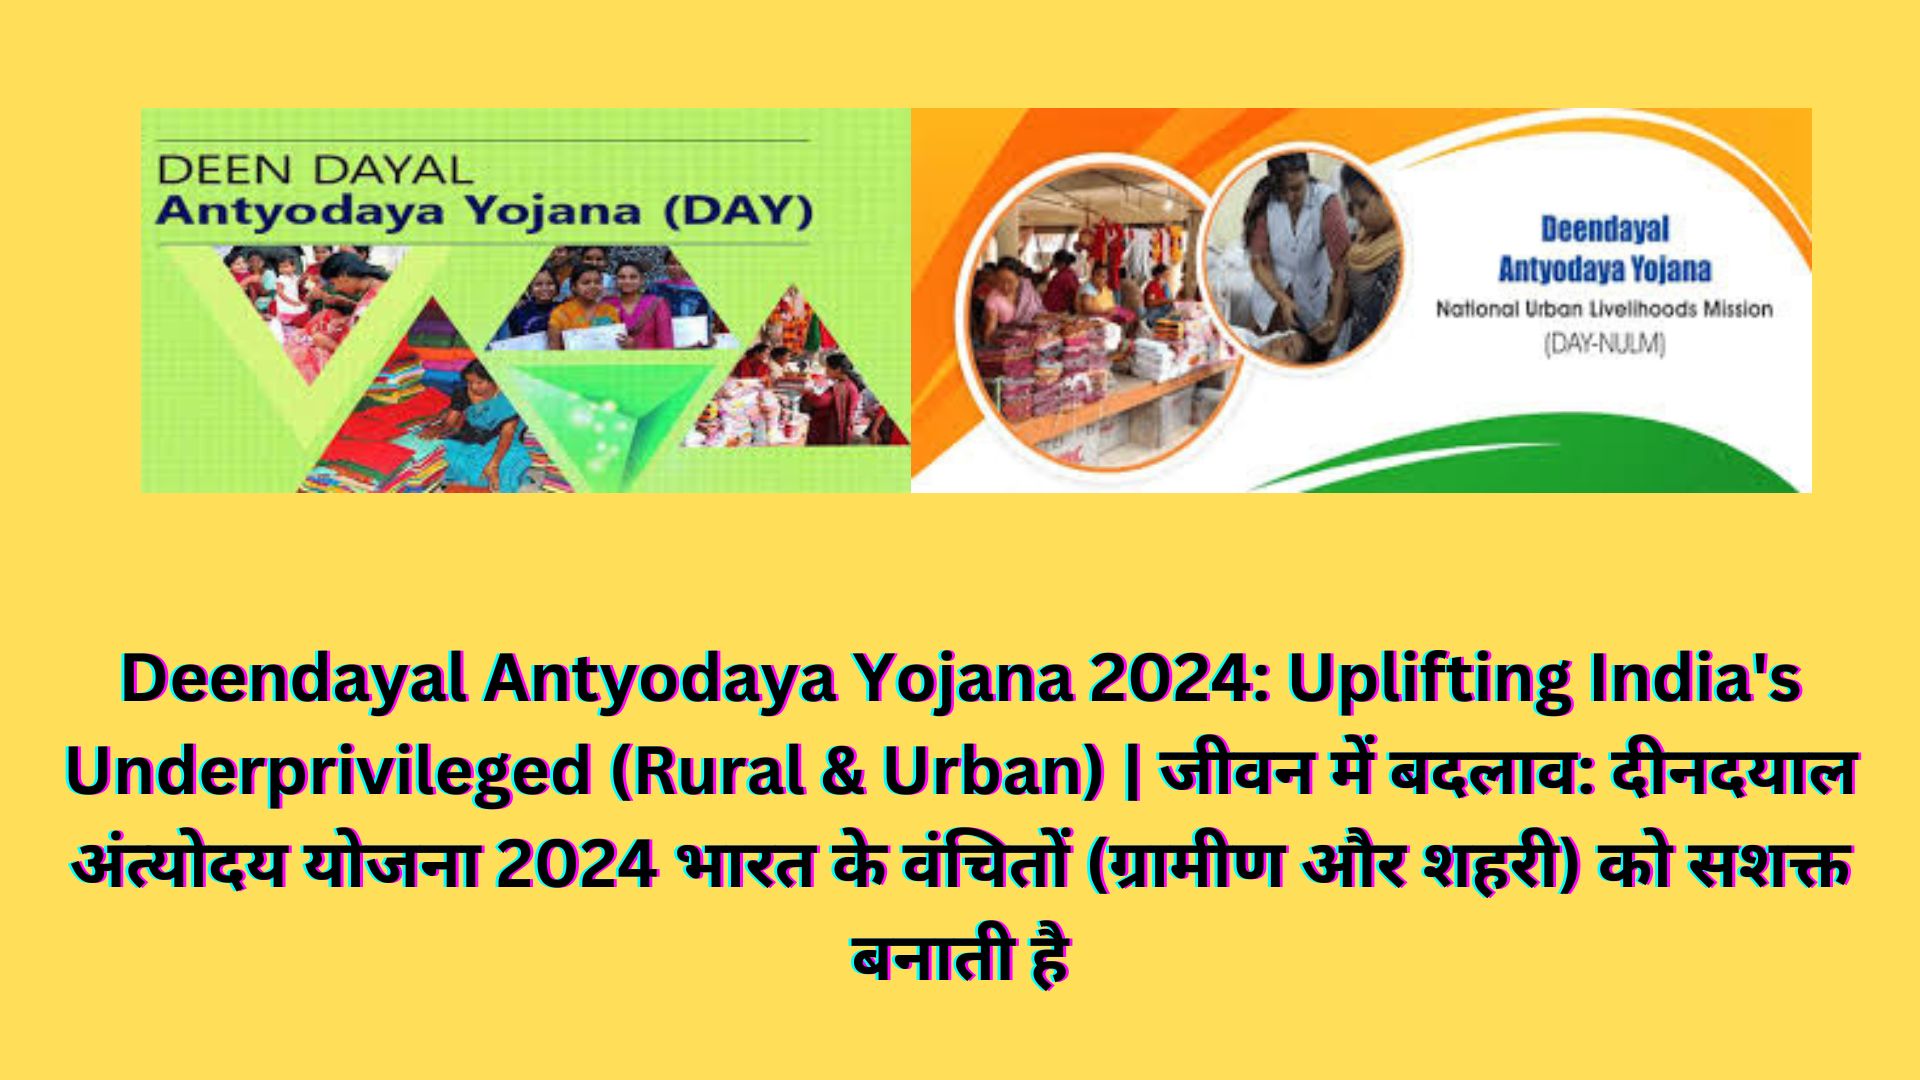 Deendayal Antyodaya Yojana 2024: Uplifting India's Underprivileged (Rural & Urban) | जीवन में बदलाव: दीनदयाल अंत्योदय योजना 2024 भारत के वंचितों (ग्रामीण और शहरी) को सशक्त बनाती है